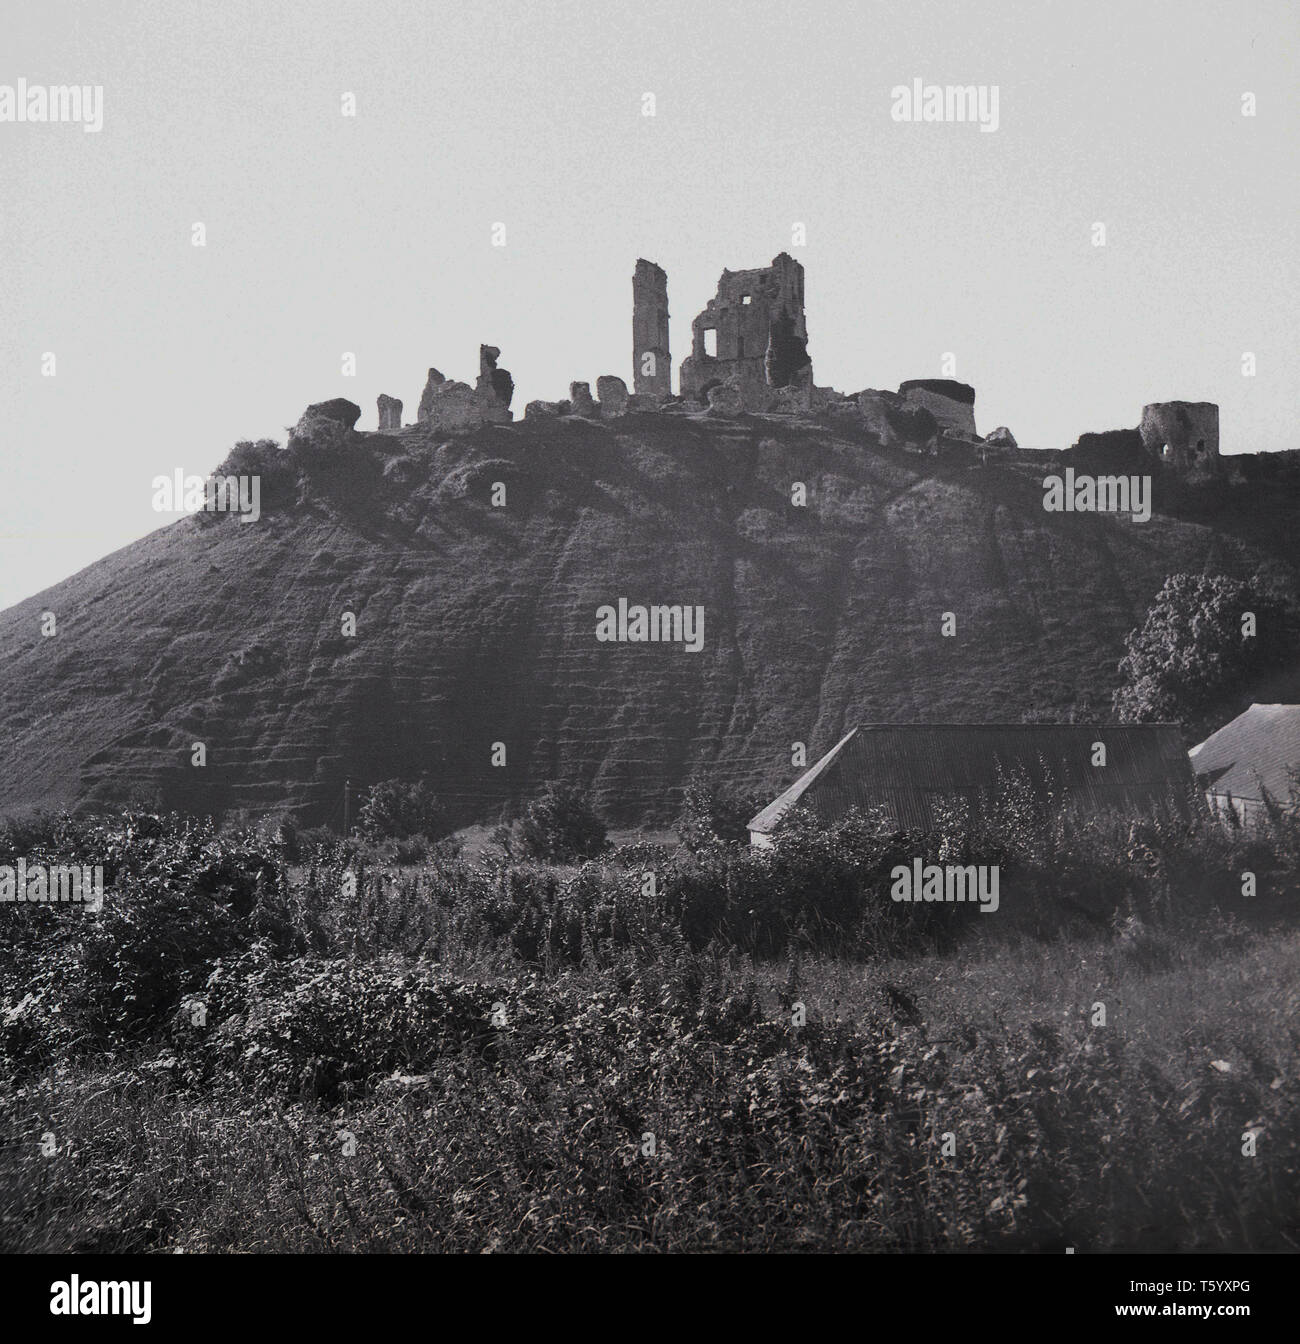 1940, historique, vue sur les ruines du château de Corfe, England, UK. La fortification, construite par Guillaume le Conquérant, remonte au 11ème siècle et les commandes une lacune dans les collines de Purbeck. Banque D'Images